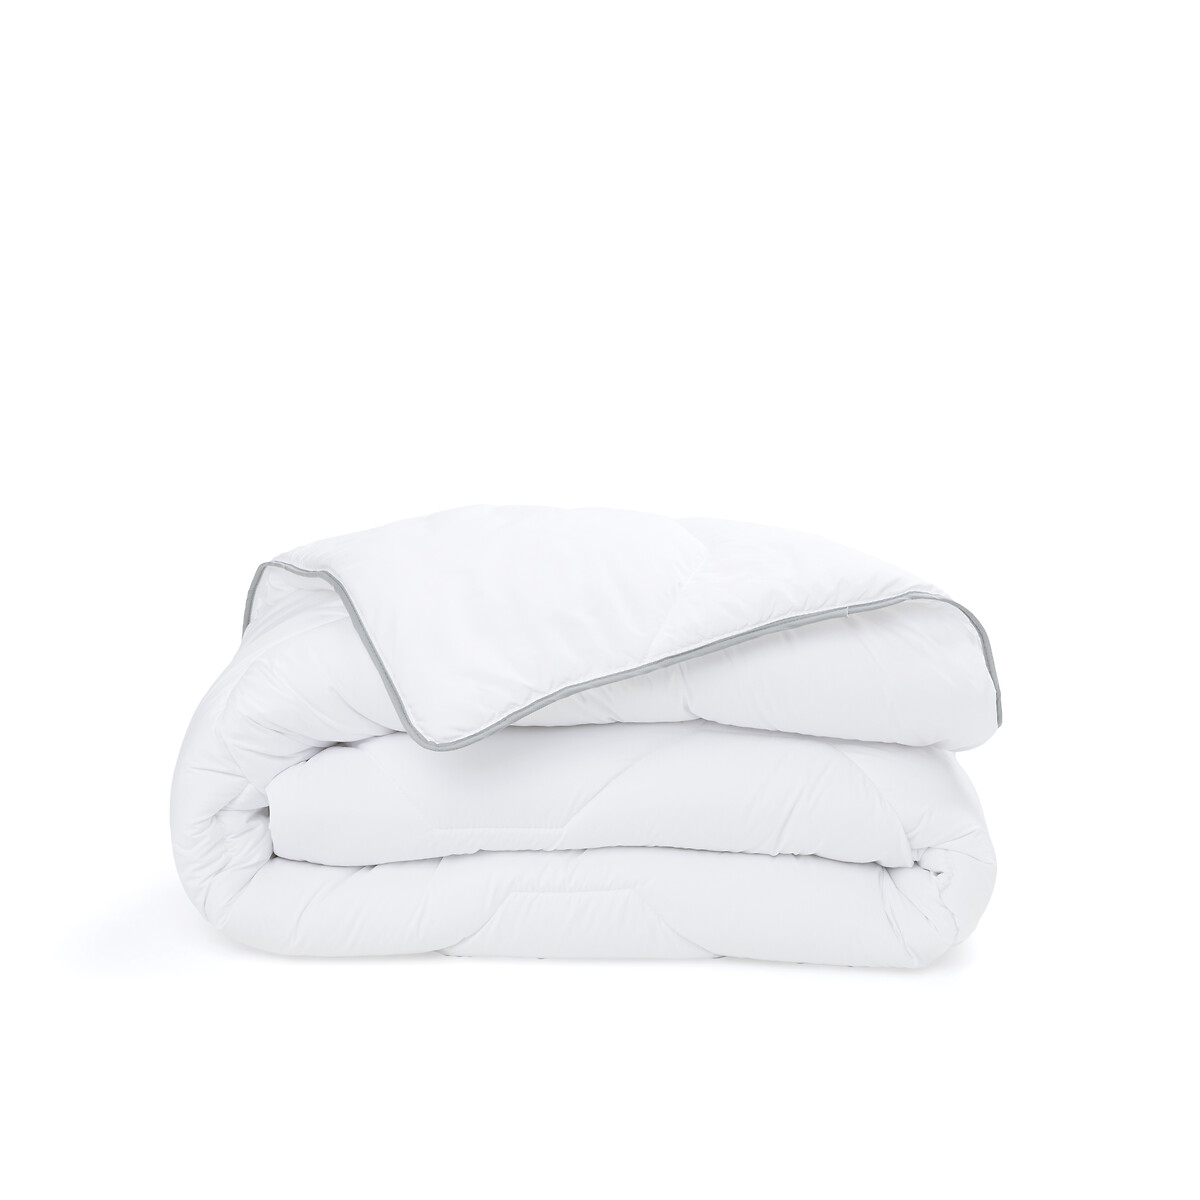 Одеяло из синтетического материала для прохладных помещений Confort htel  240 x 220 см белый LaRedoute, размер 240 x 220 см - фото 2